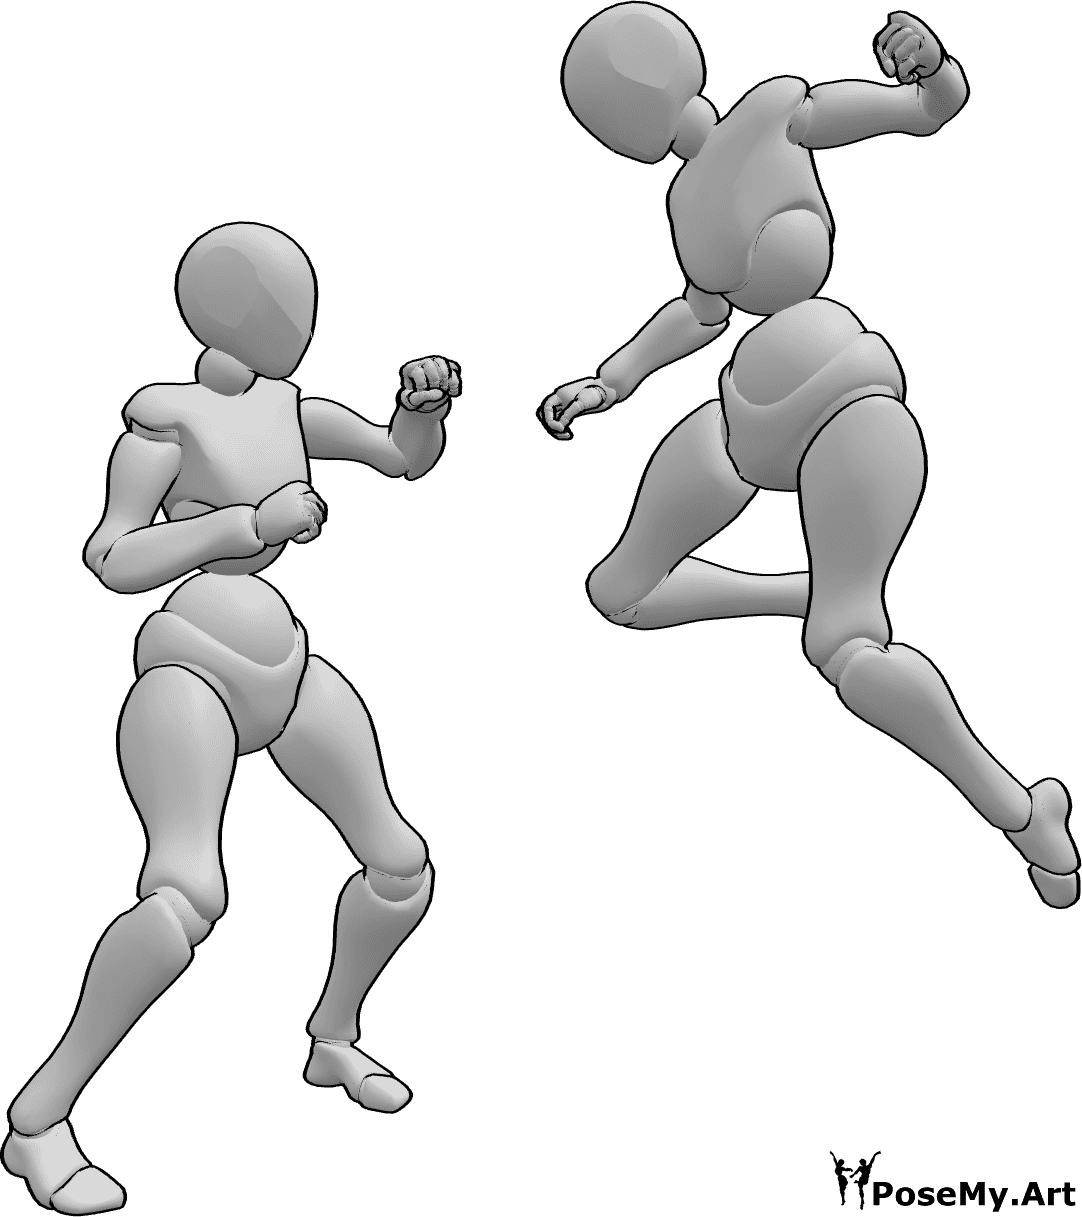 Posen-Referenz- Hohe Punch-Pose - Die Frauen kämpfen, eine springt hoch, um einen Schlag zu landen